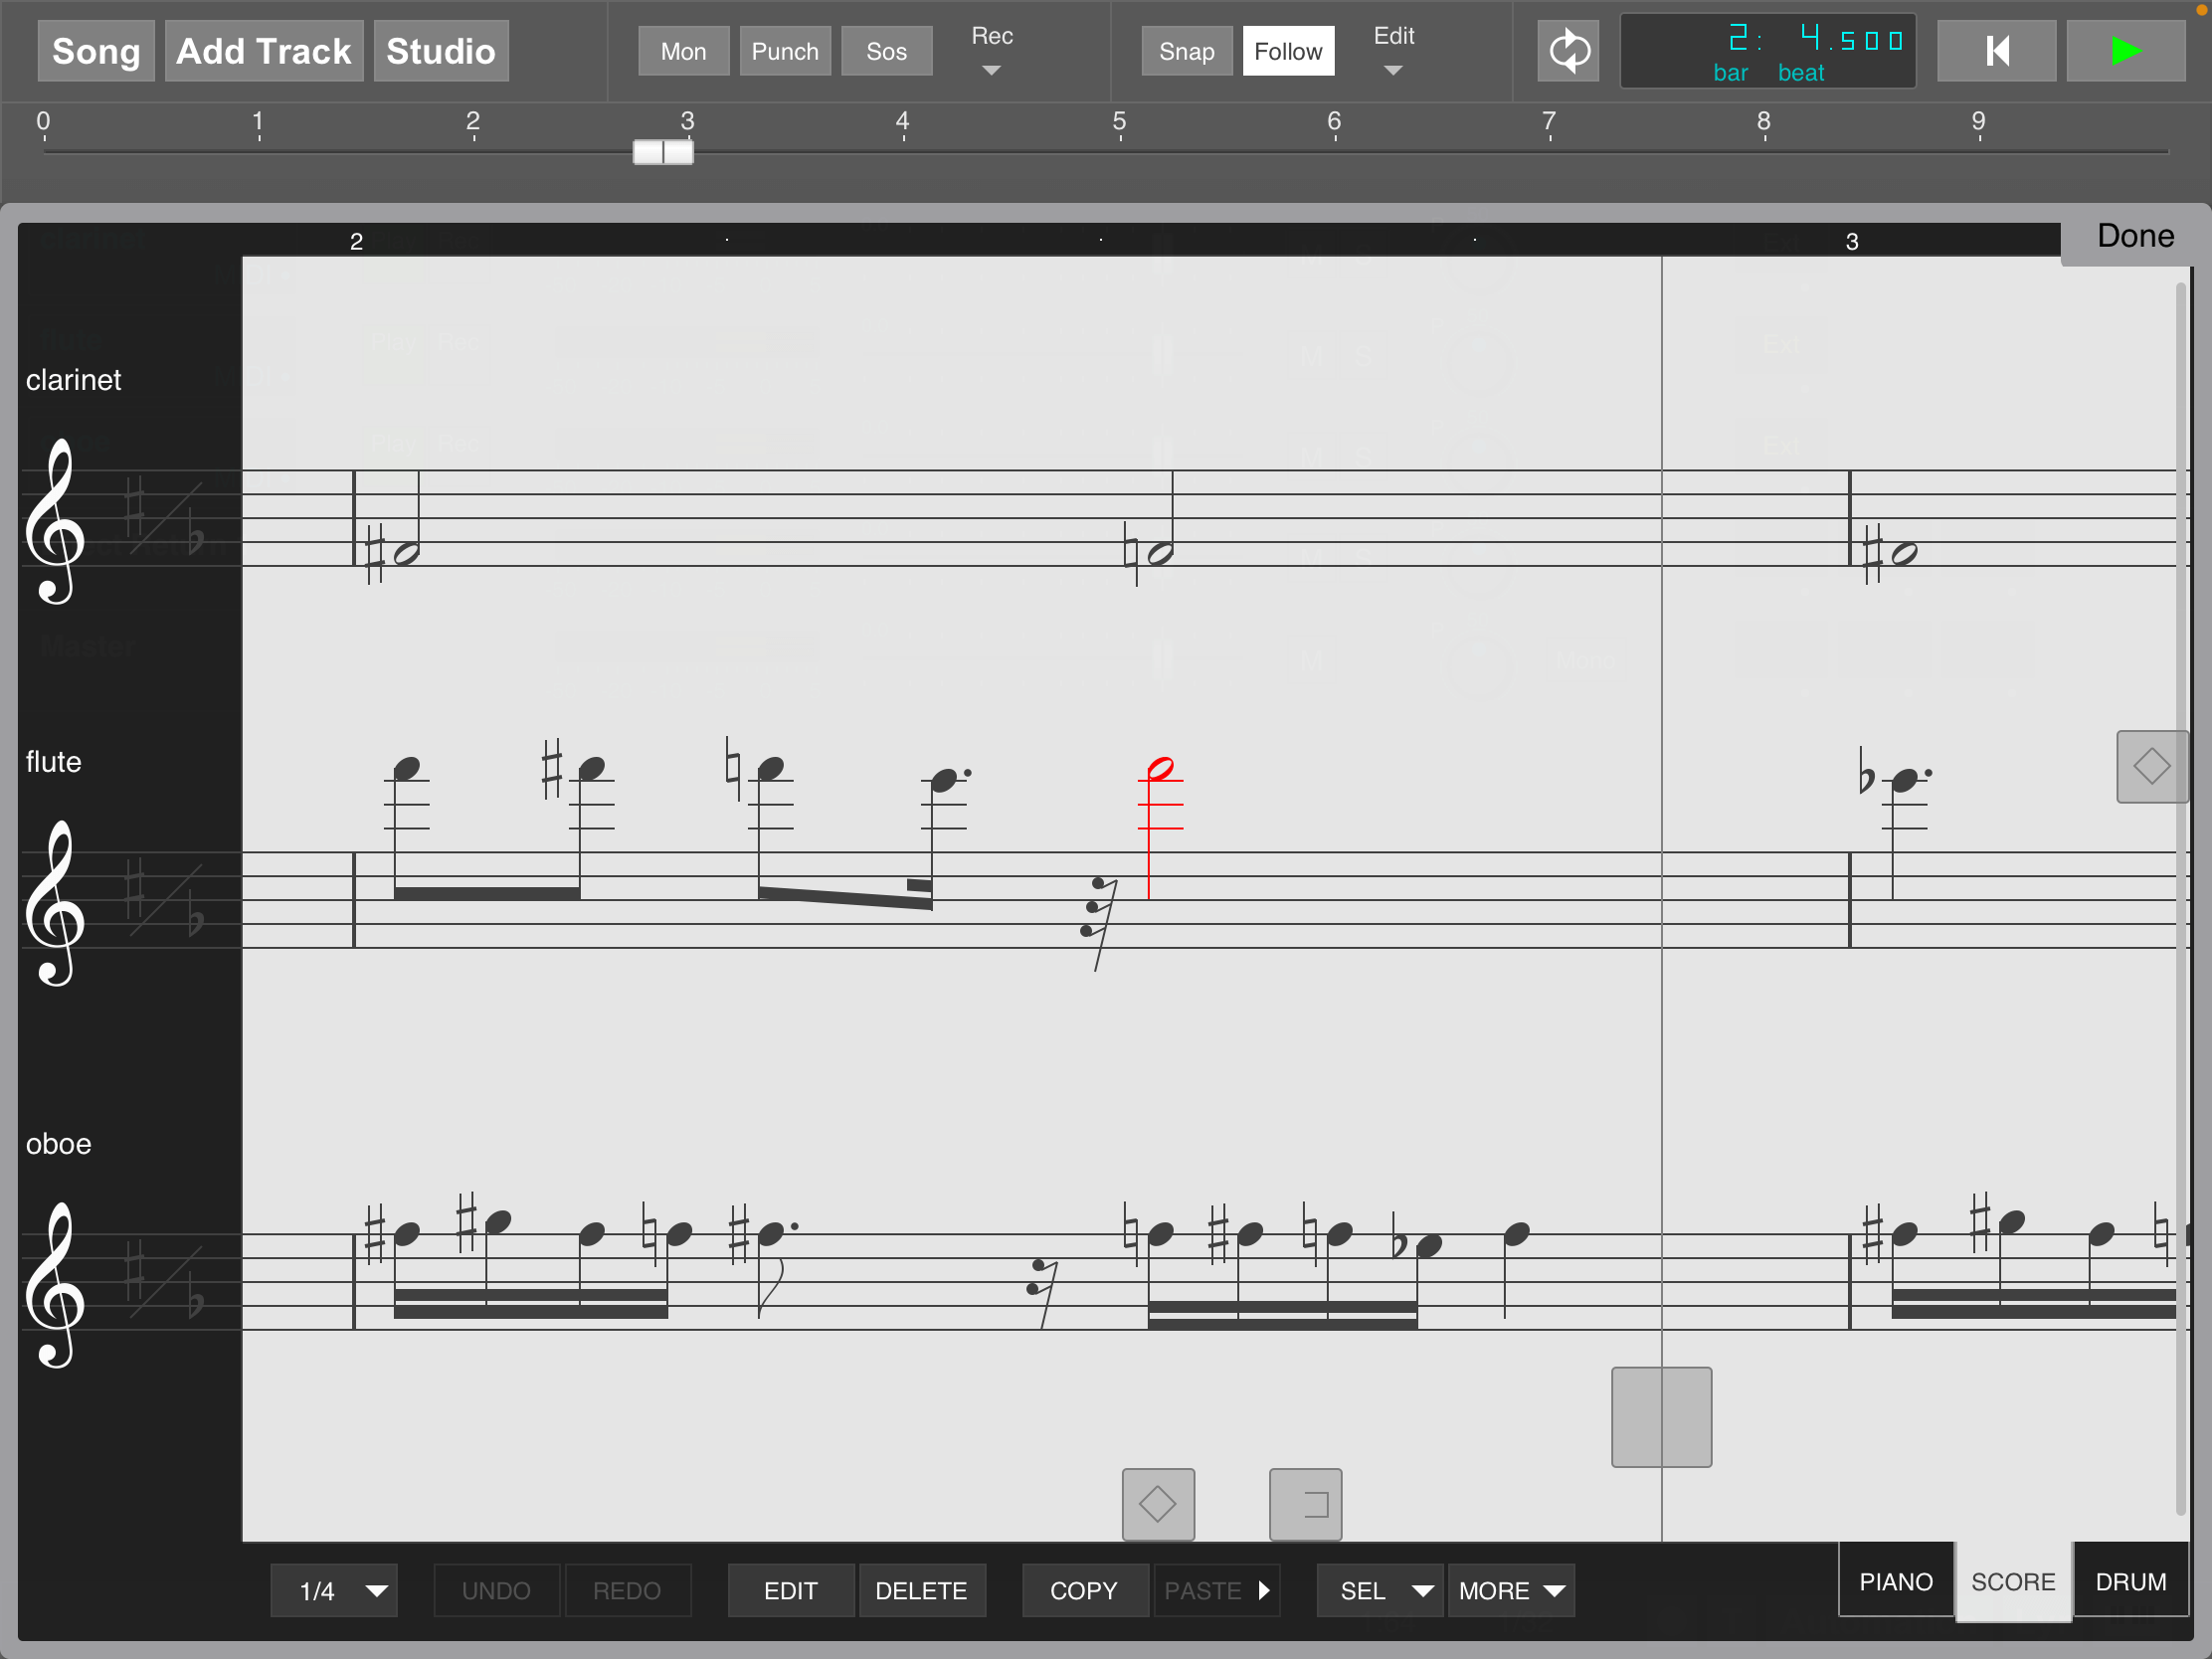 Multi MIDI Editor (score)